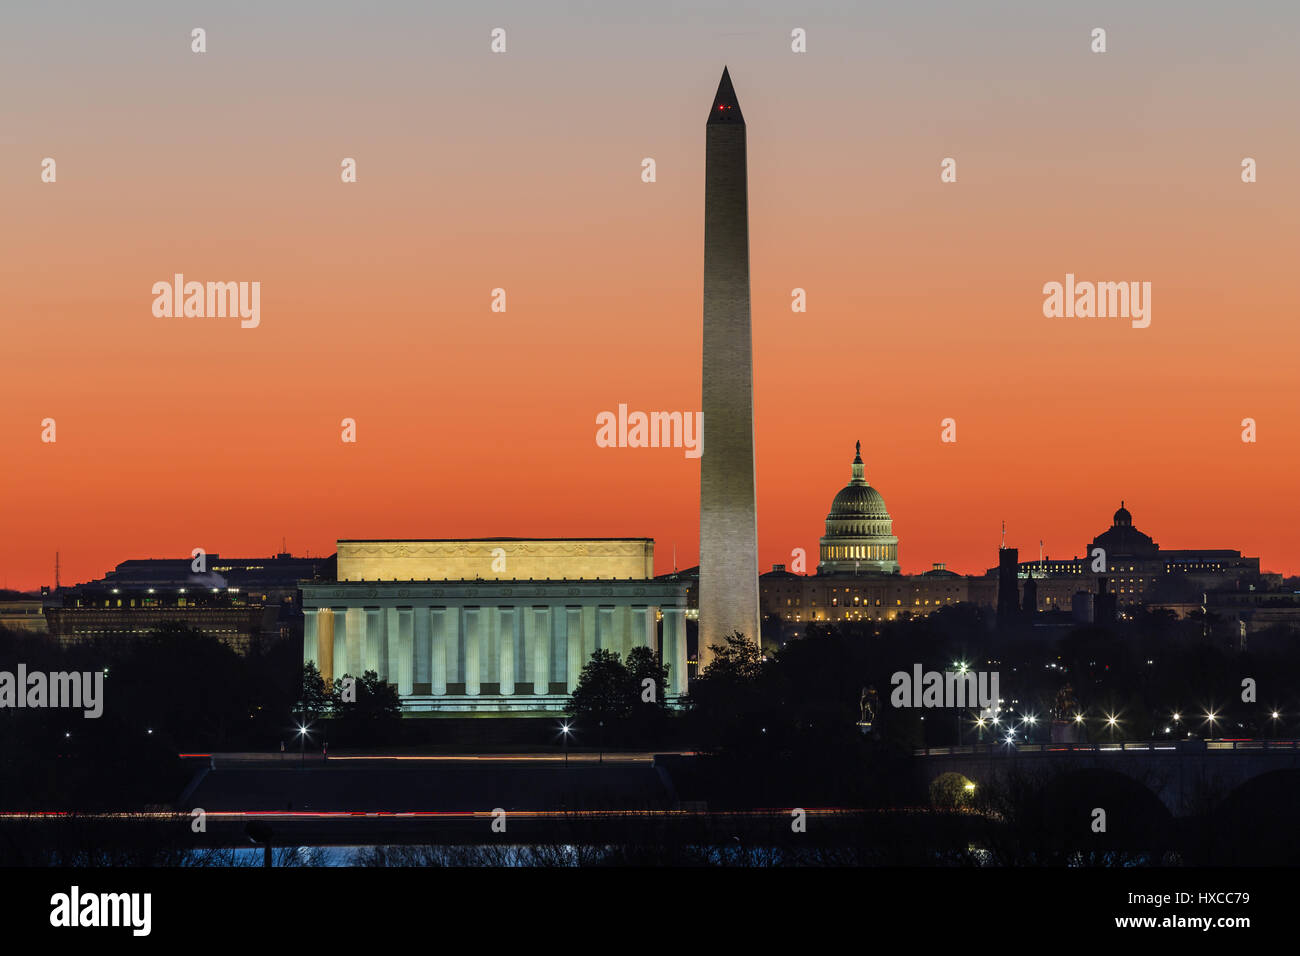 Le Lincoln Memorial, le Washington Monument, le Capitole et contre un ciel orange pendant le crépuscule du matin à Washington, DC. Banque D'Images